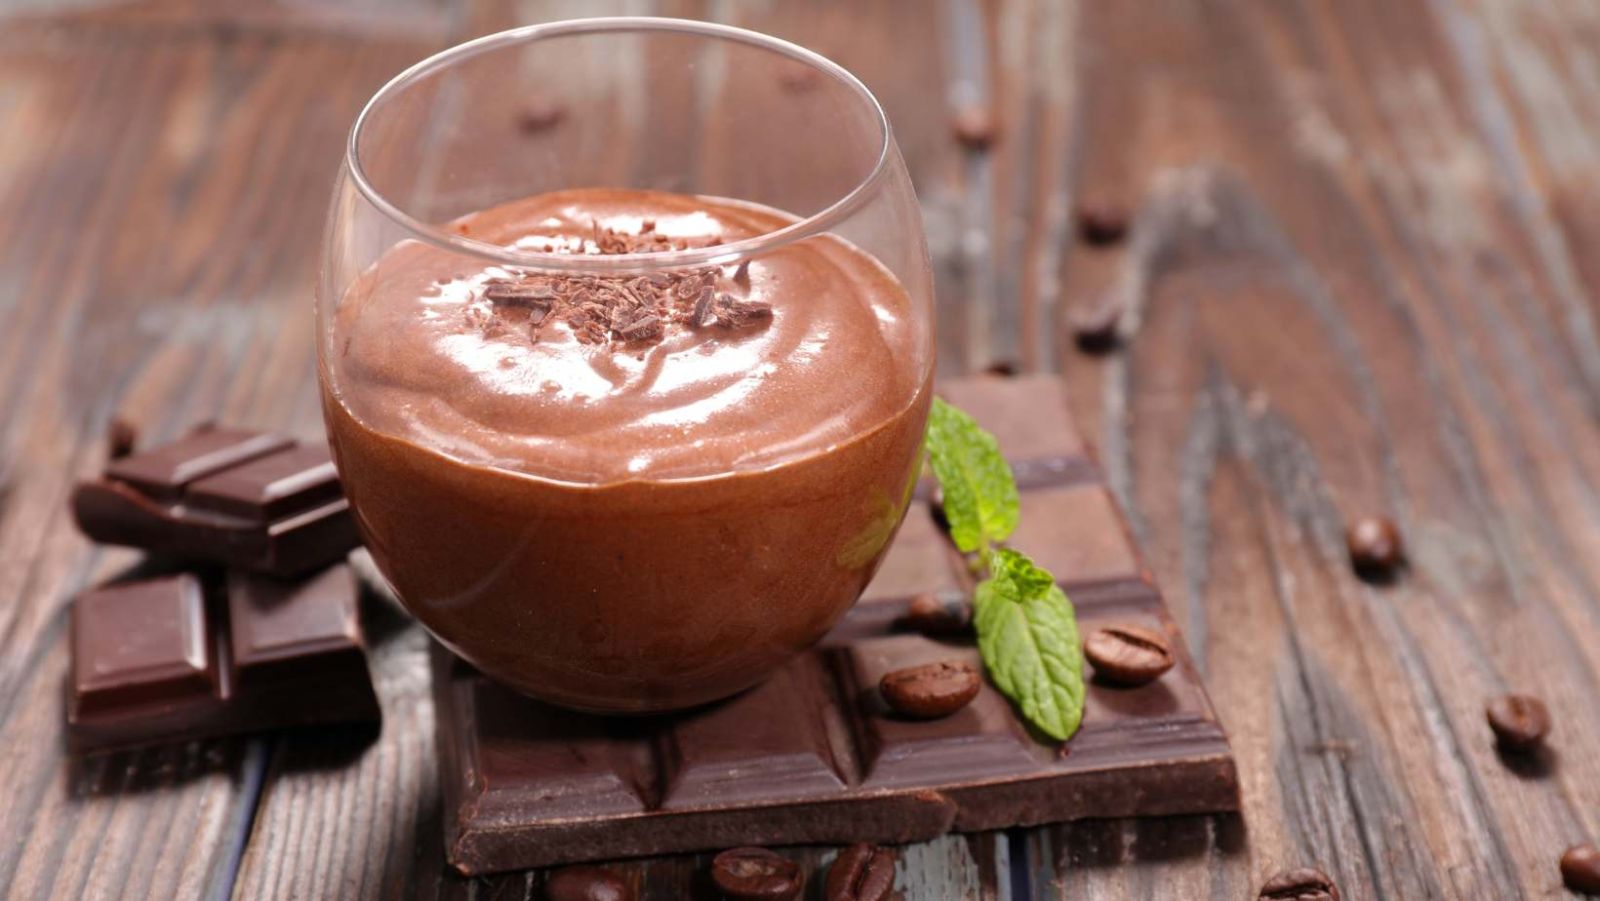 Mousse au chocolat diététique : le dessert minceur aérien et gourmand